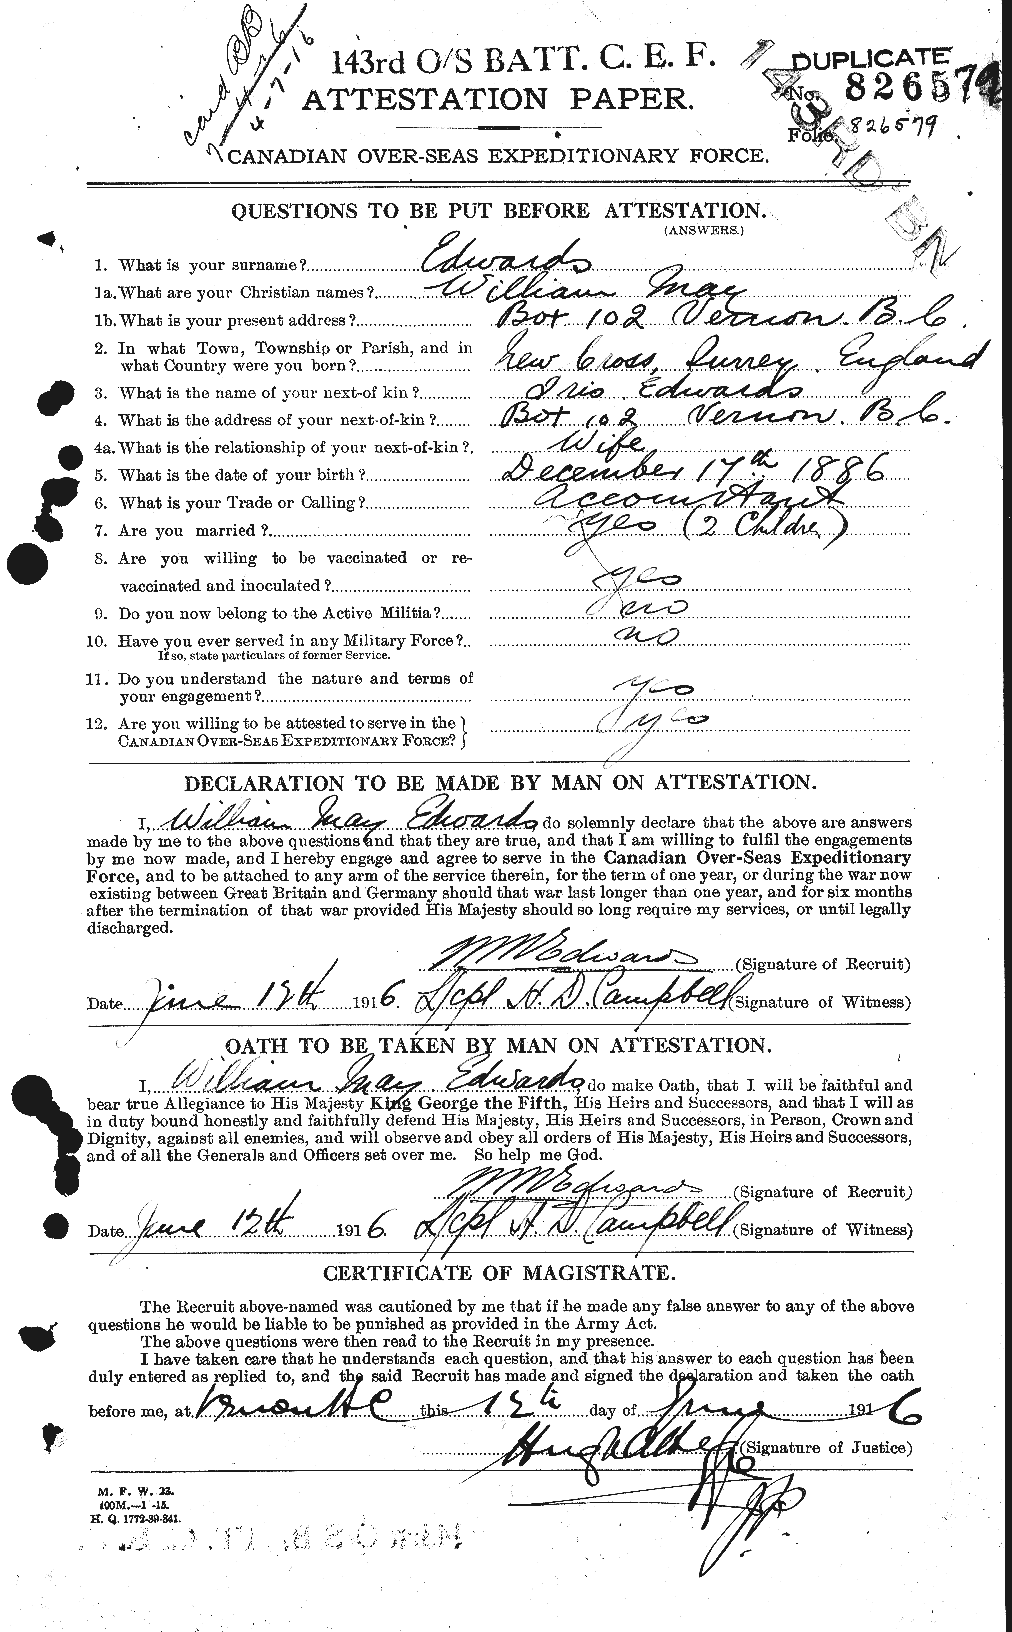 Dossiers du Personnel de la Première Guerre mondiale - CEC 311932a